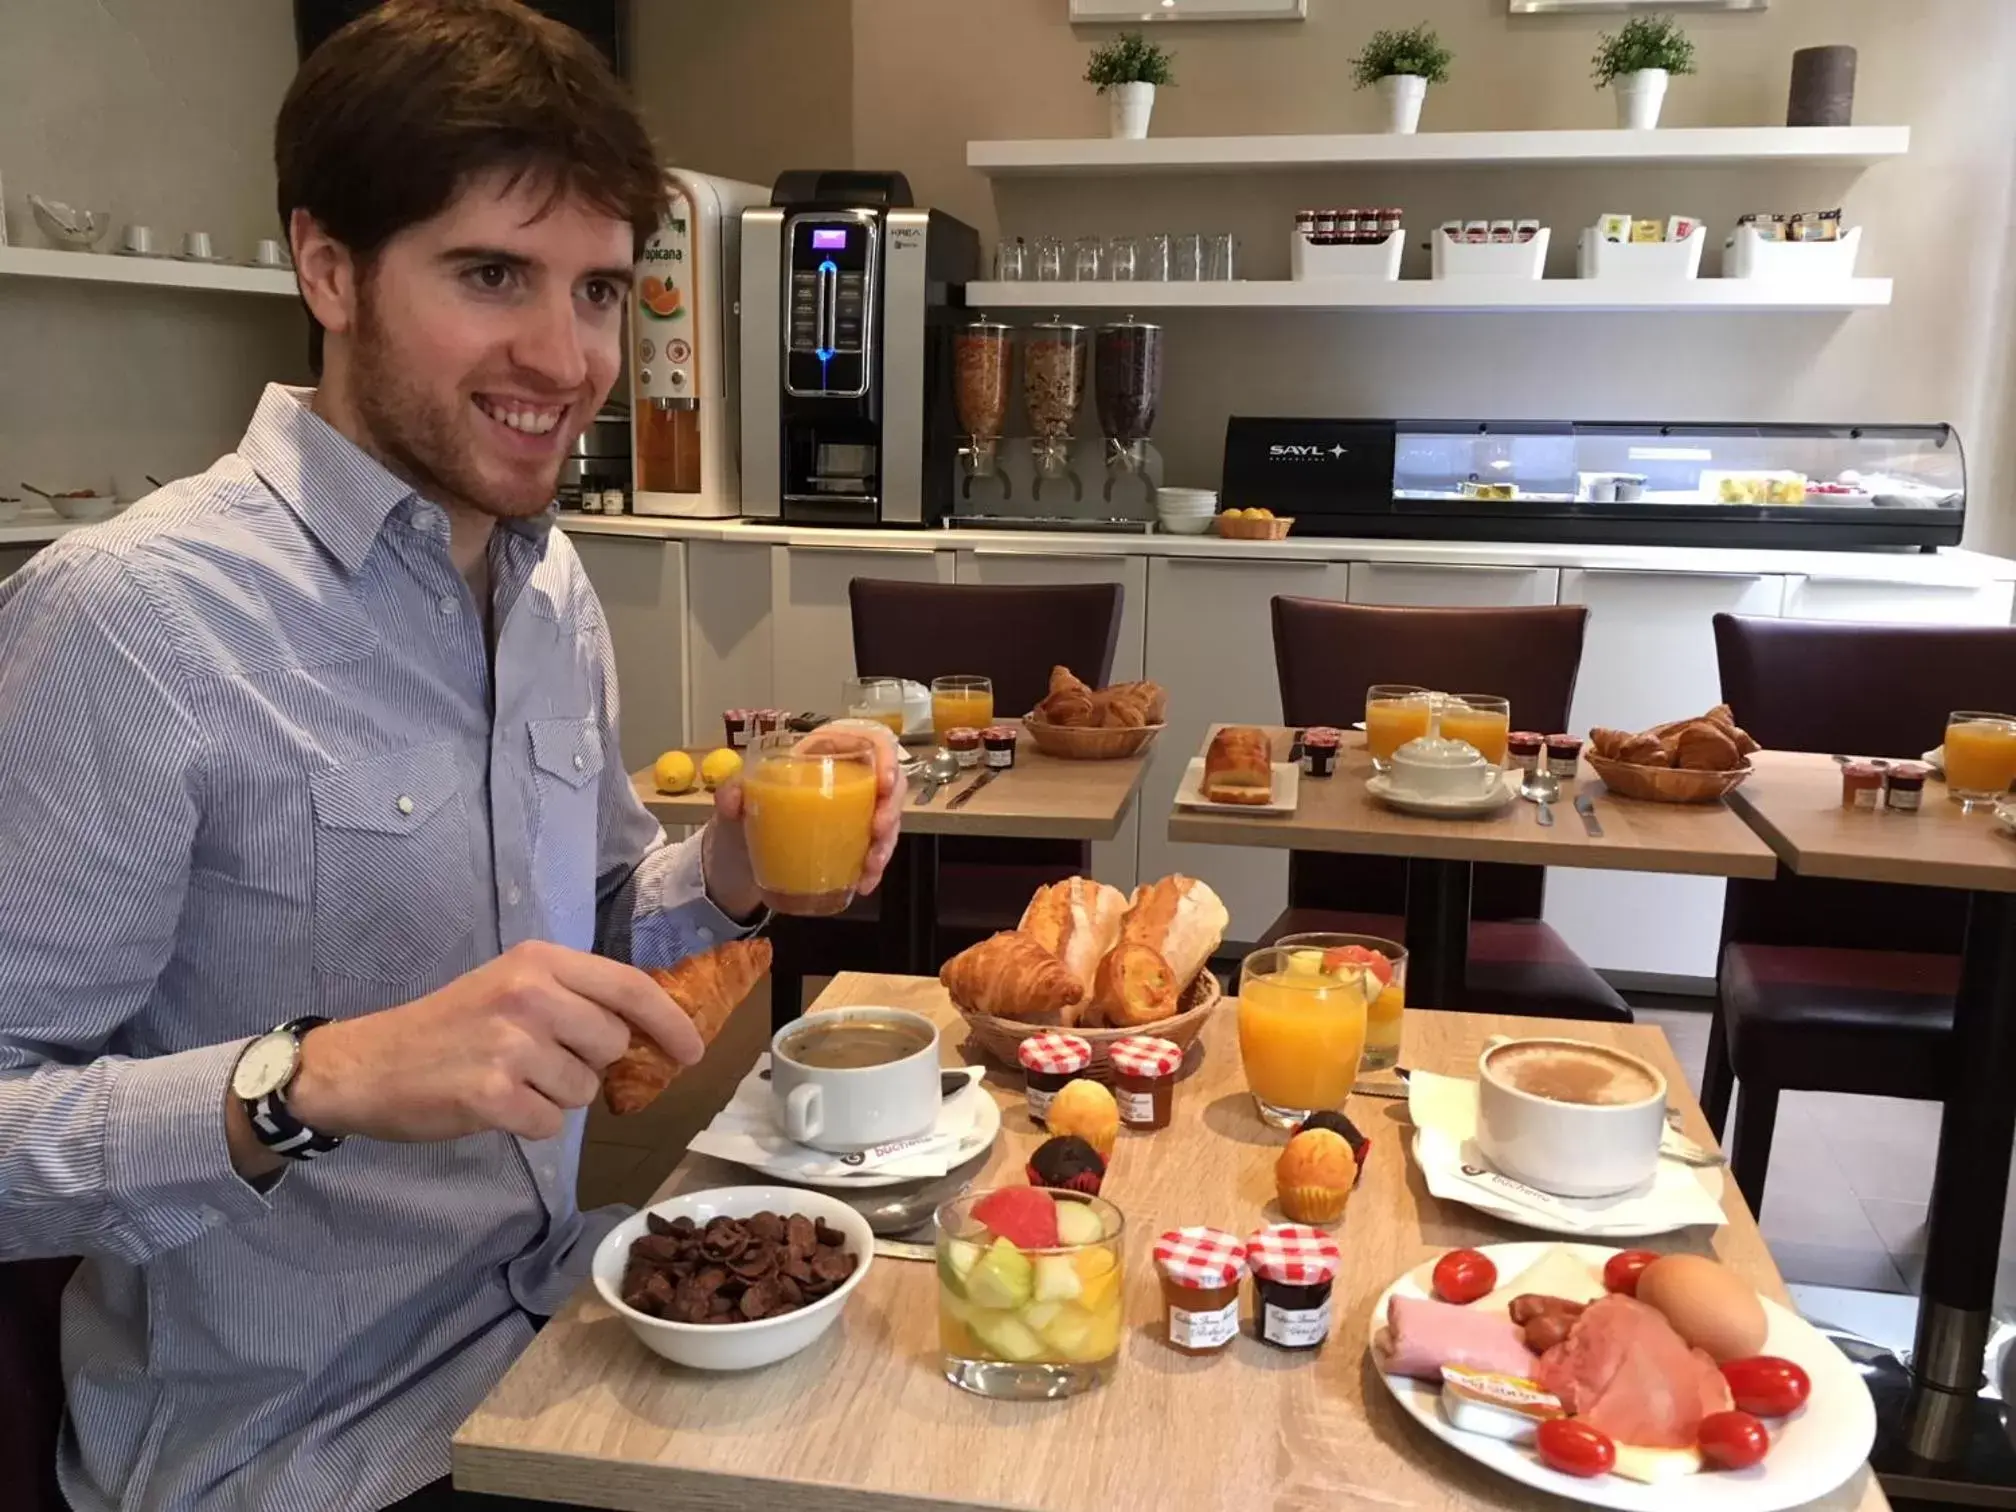 Buffet breakfast in Hotel Viator - Gare de Lyon